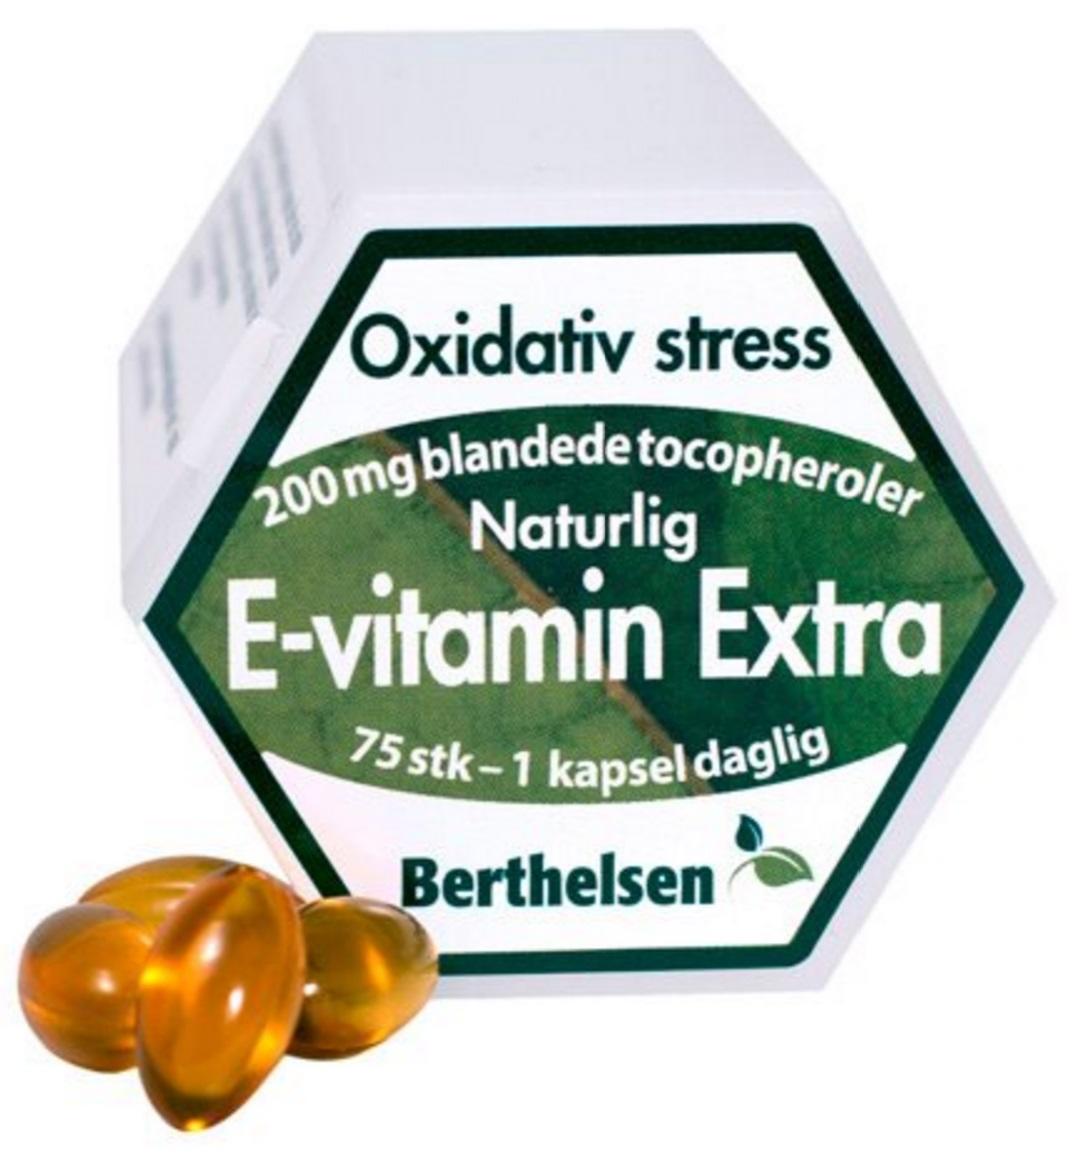 Billede af Berthelsen E-vitamin Ekstra, 75kap.